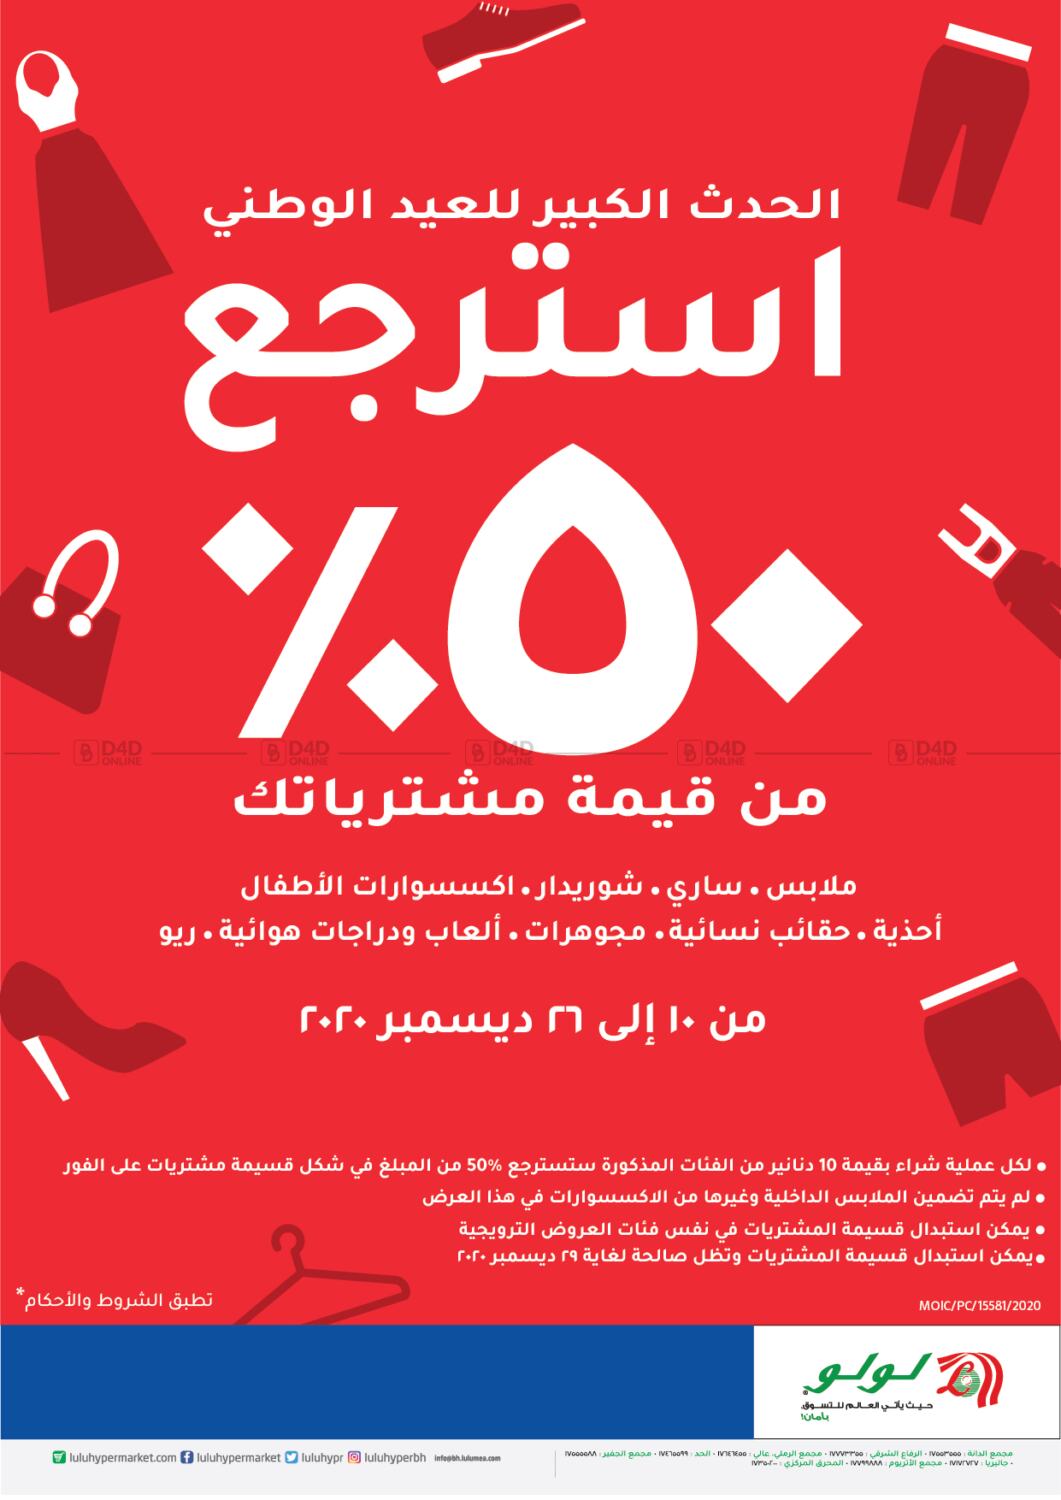 LuLu Hypermarket Anniversary Offers in Bahrain. Till 21st September